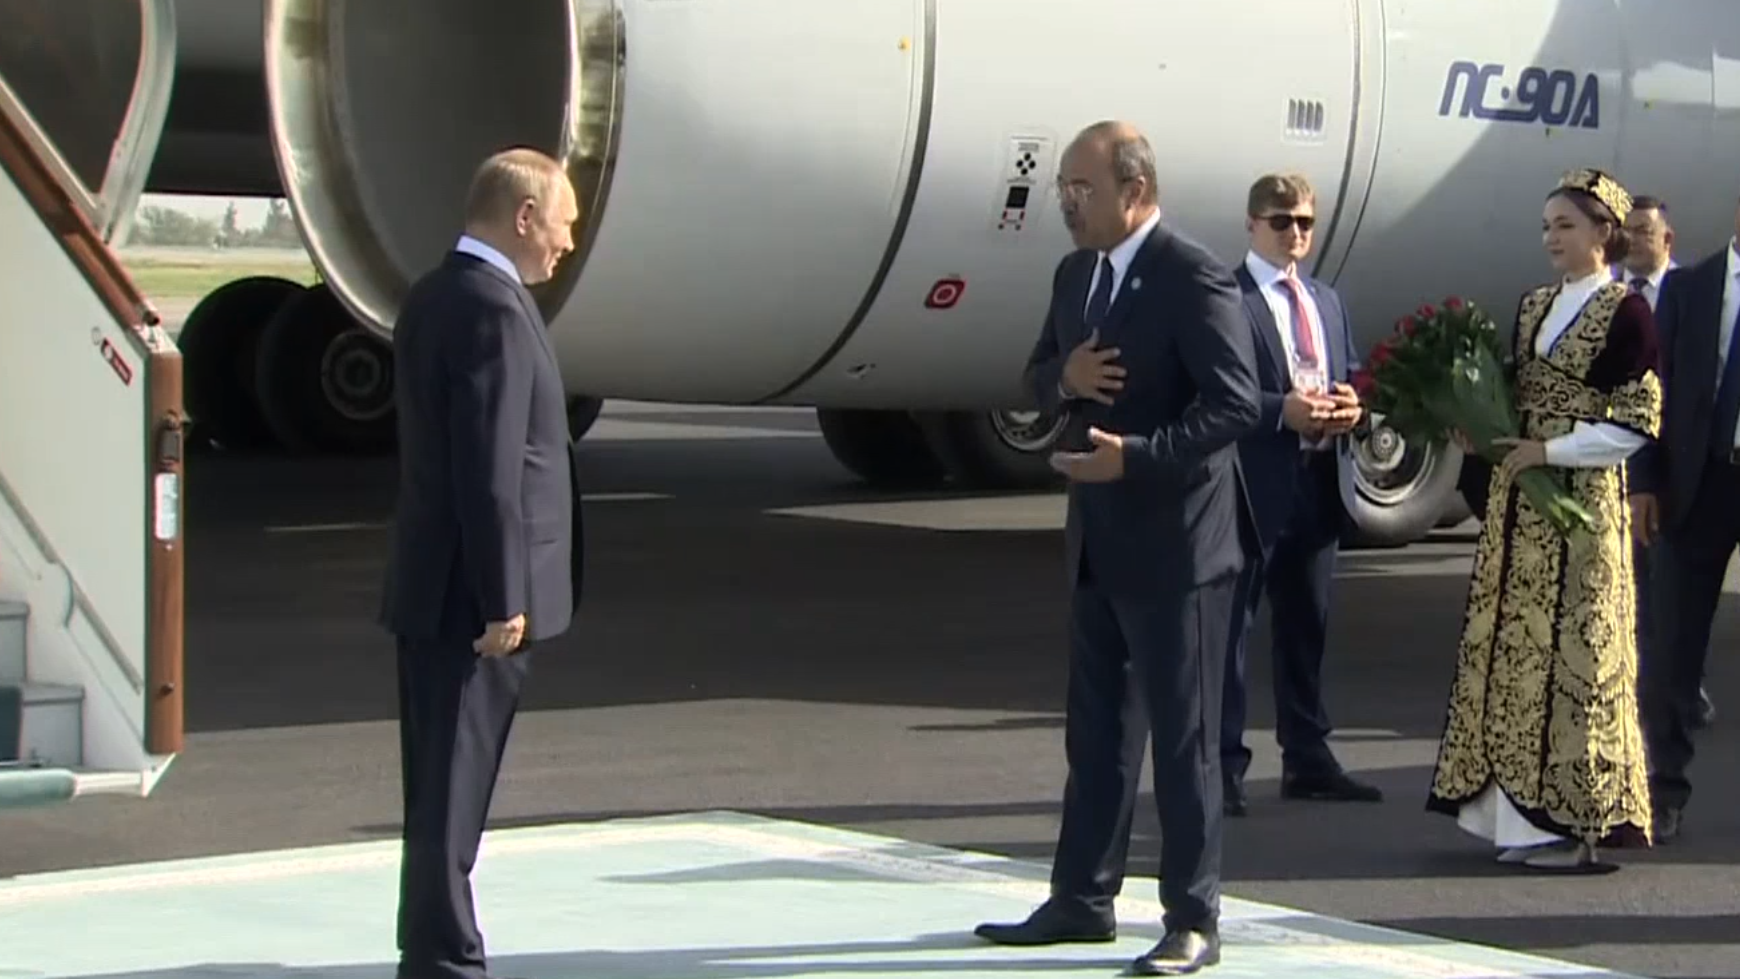 Путин прилетел в Самарканд на саммит ШОС